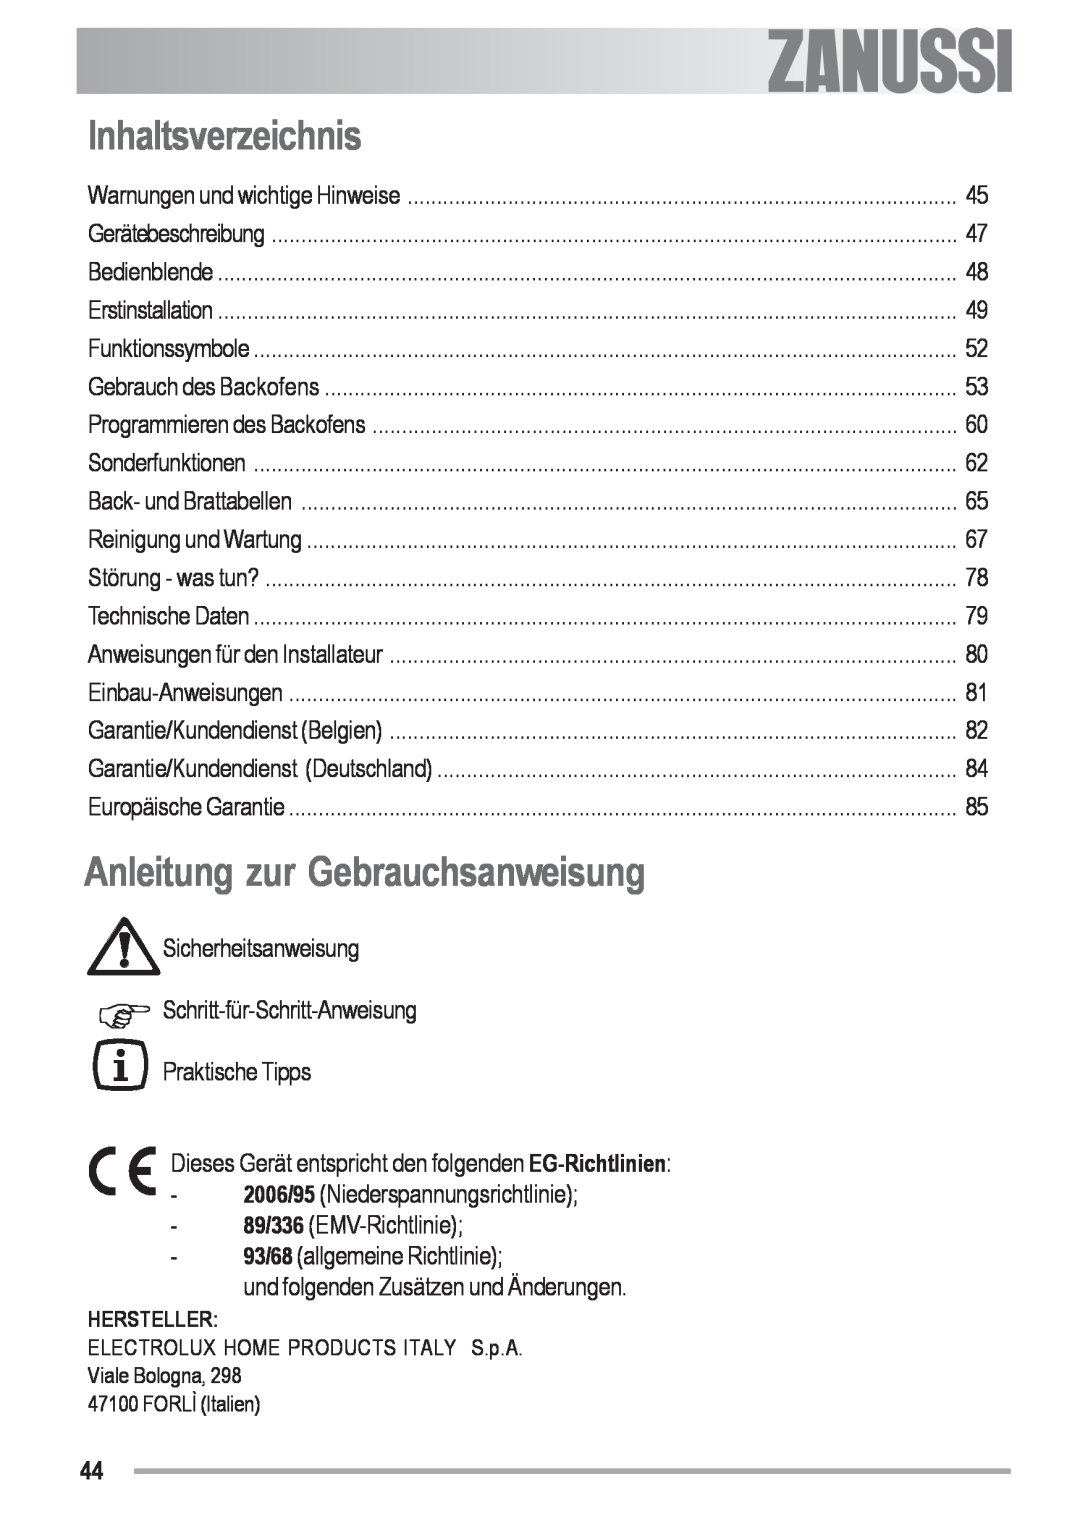 Zanussi ZYB 591 XL, ZYB 590 XL manual Inhaltsverzeichnis, Anleitung zur Gebrauchsanweisung, electrolux 